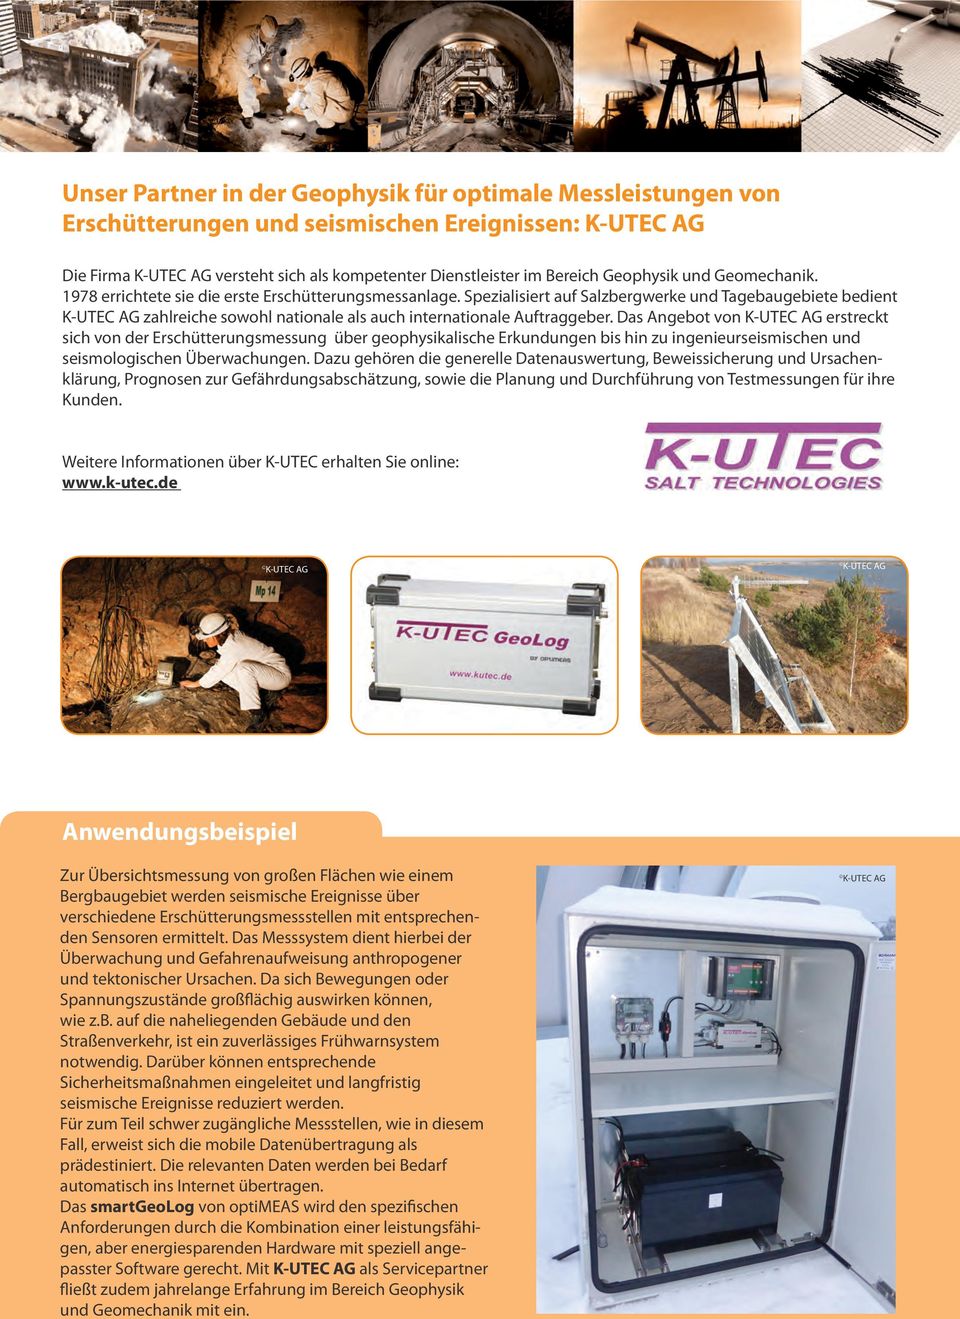 Spezialisiert auf Salzbergwerke und Tagebaugebiete bedient K-UTEC AG zahlreiche sowohl nationale als auch internationale Auftraggeber.